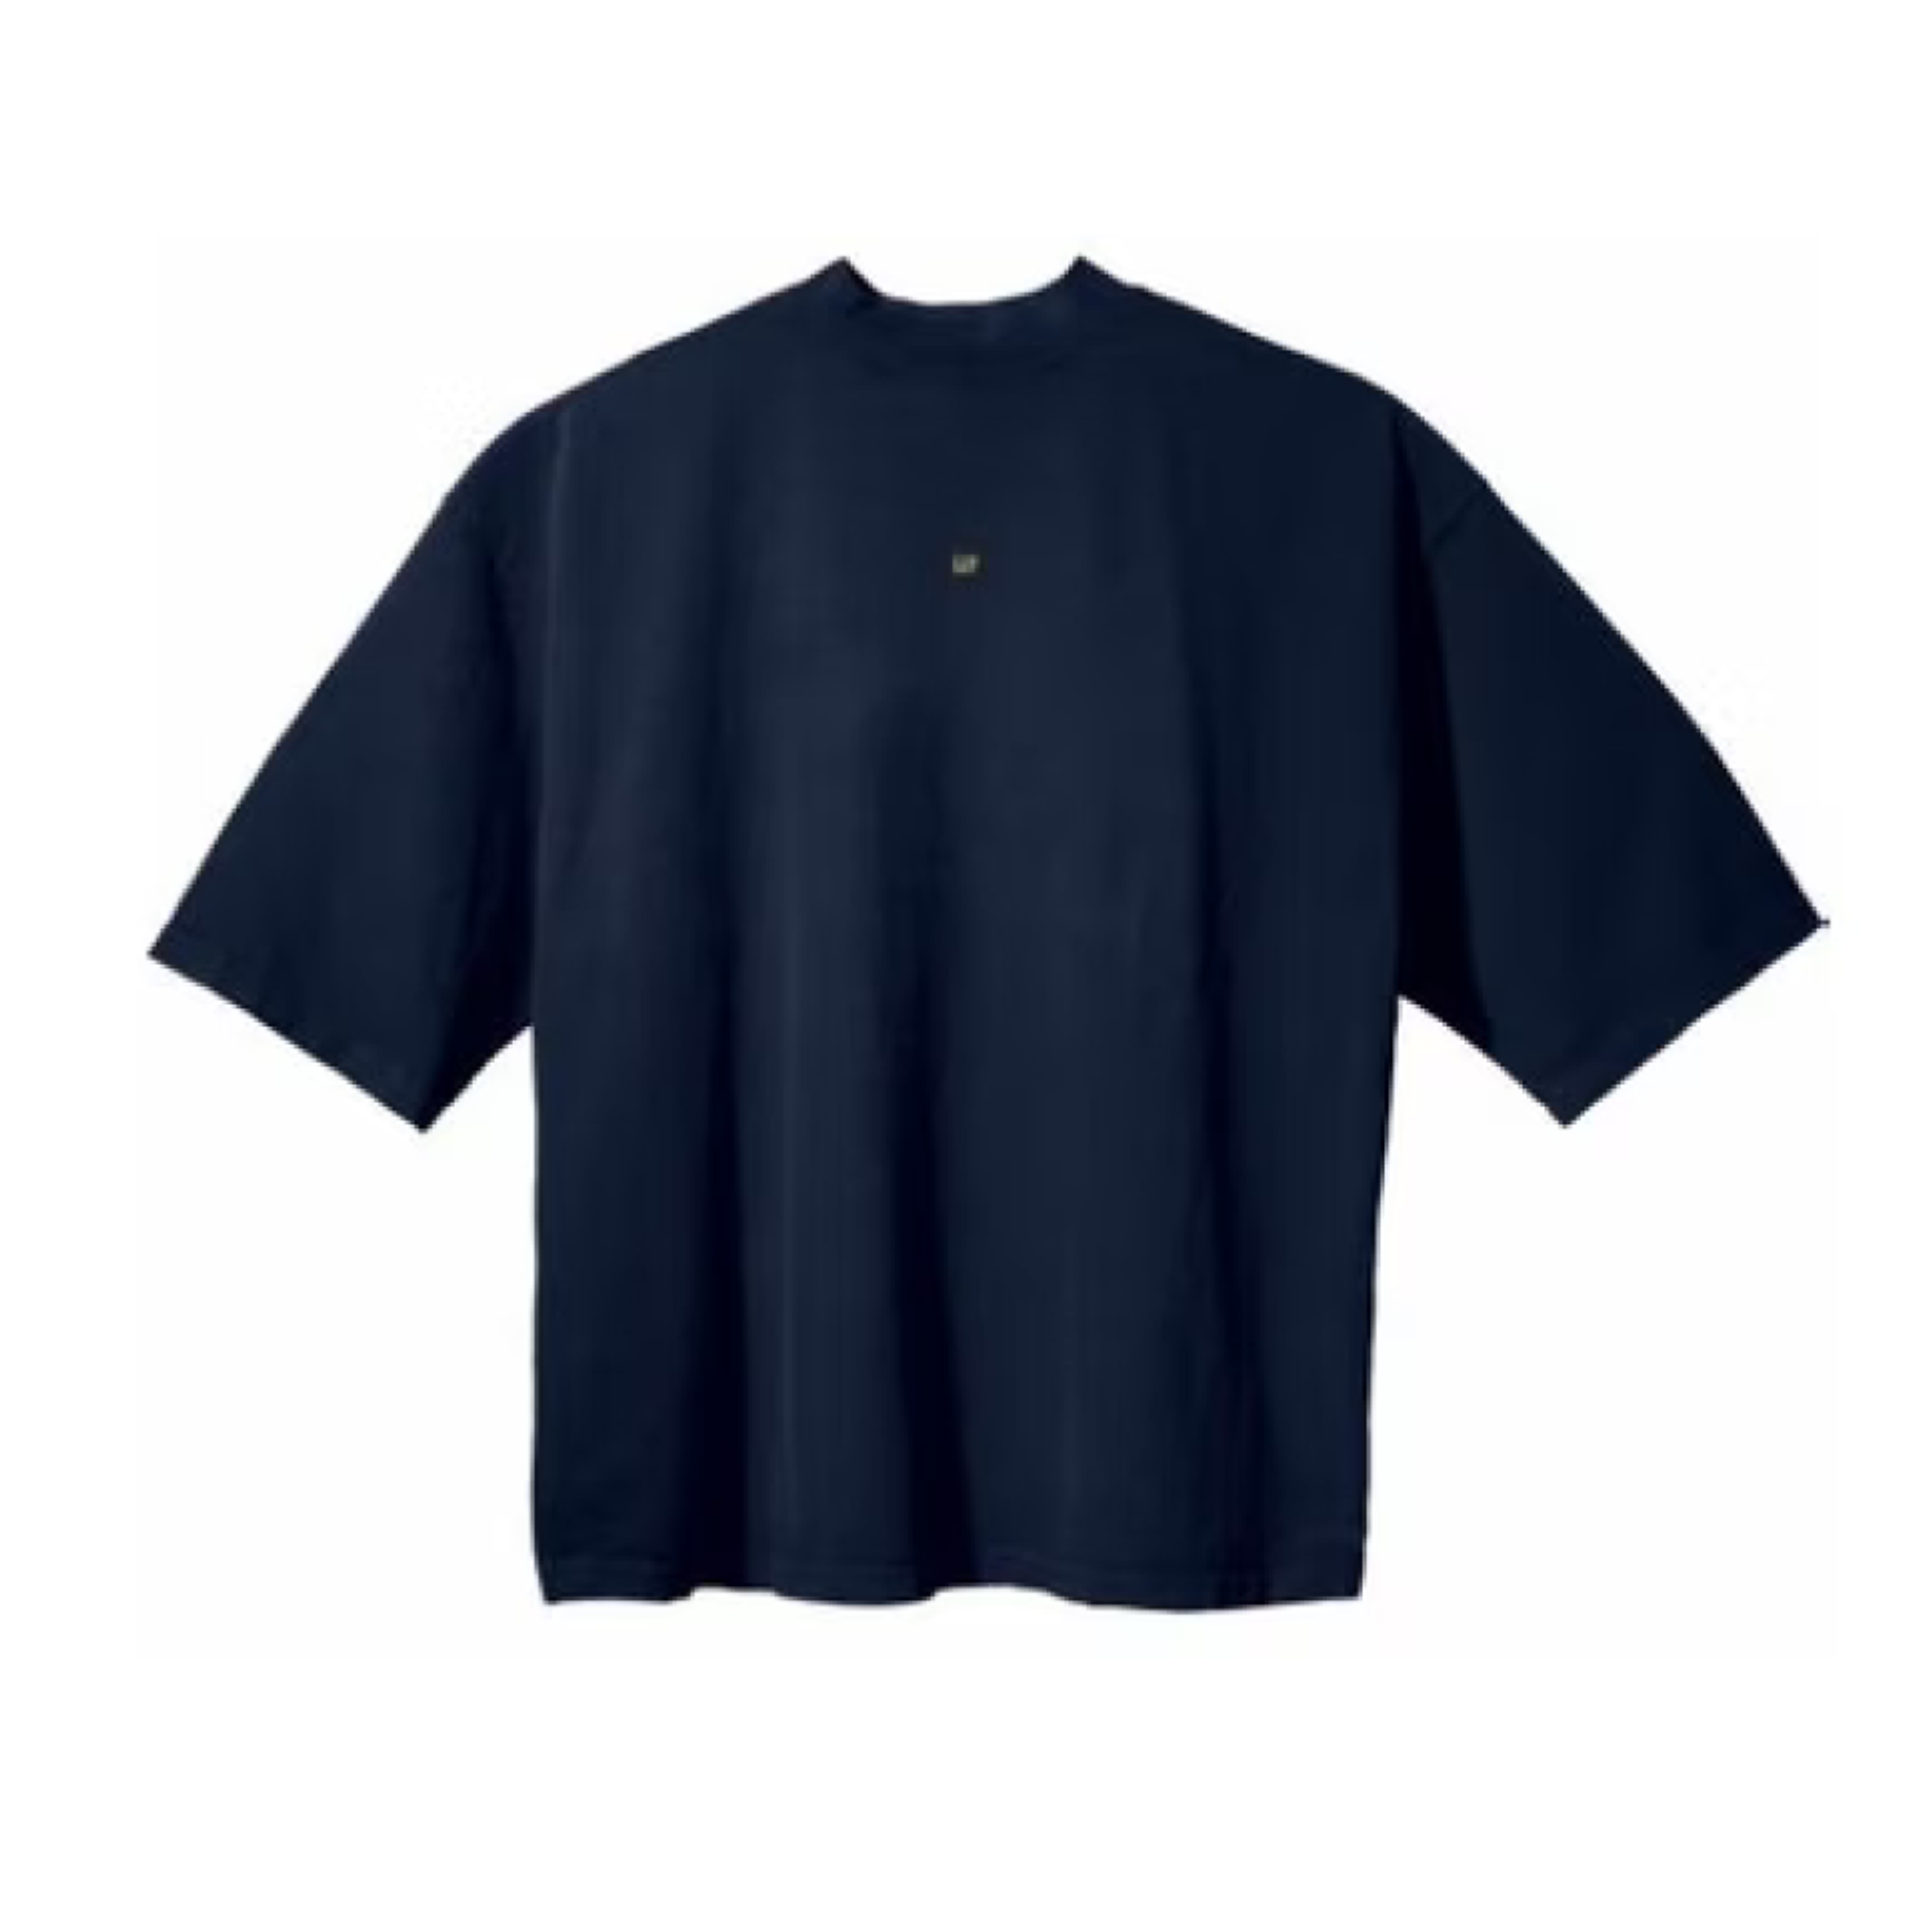 Yeezy Gap Engineered by Balenciaga 3/4 Sleeve Tee 'Logo' Navy